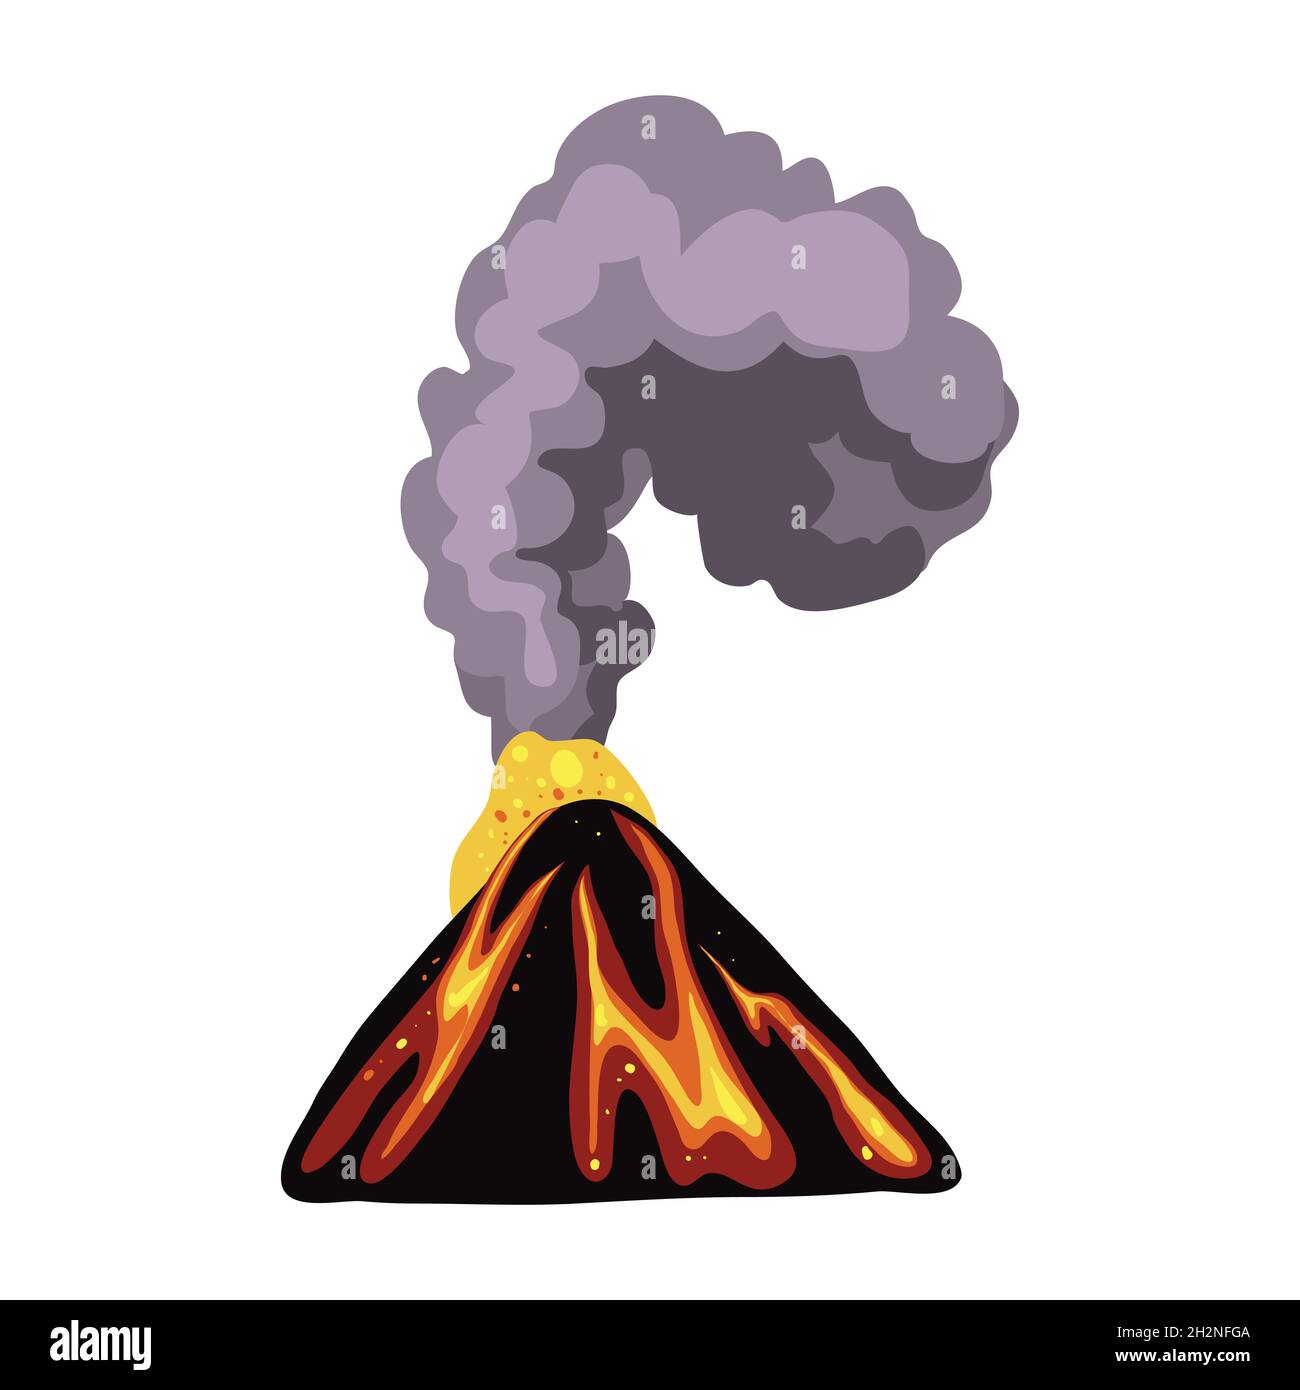 Volcano eruption vector illustration Stock Vector